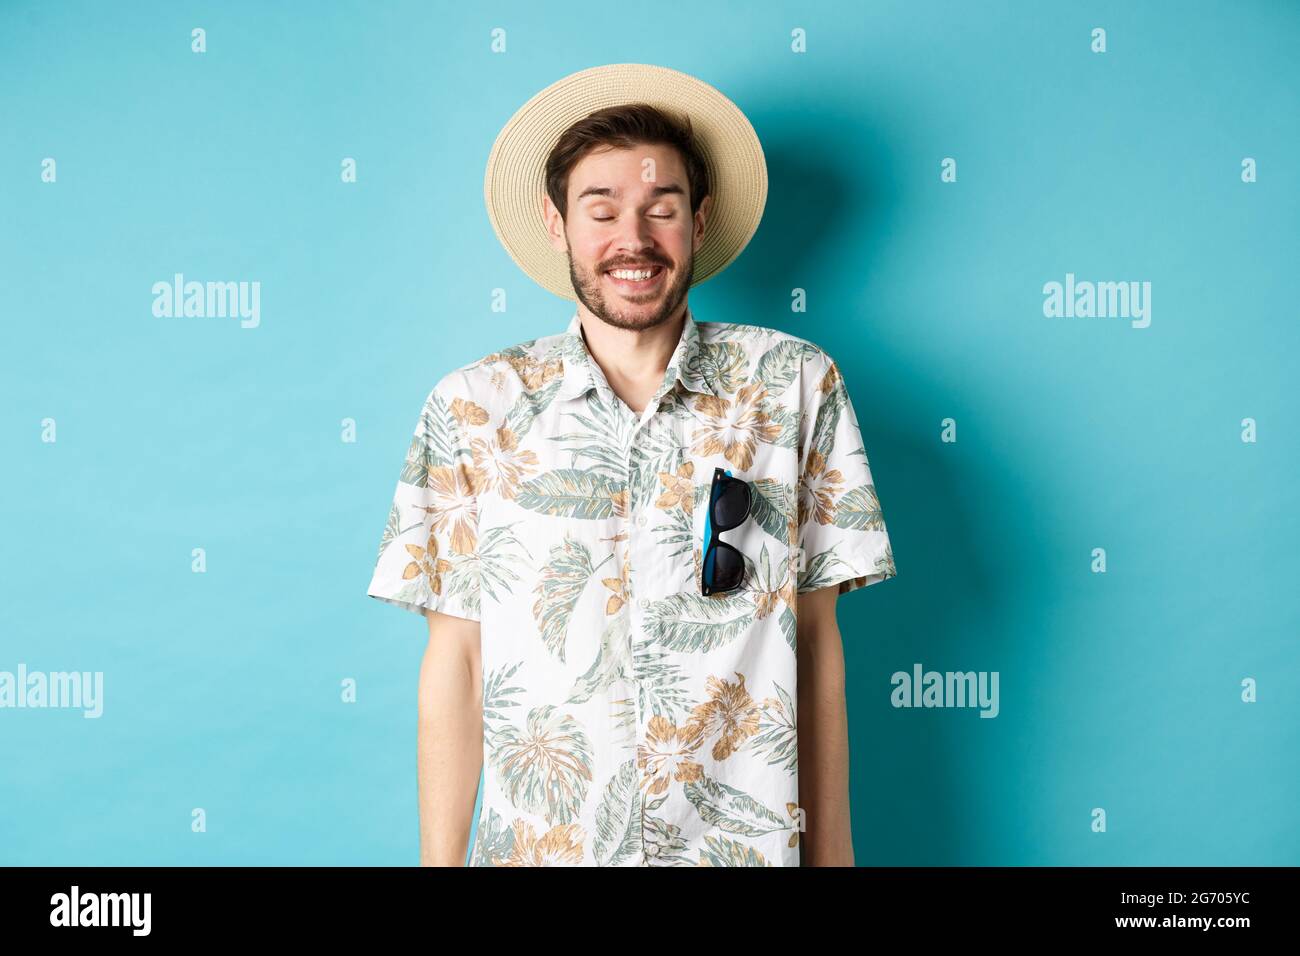 Fröhlicher Tourist, der Sommerurlaub genießt, Strohhut und hawaiihemd trägt  und fröhlich auf blauem Hintergrund steht Stockfotografie - Alamy